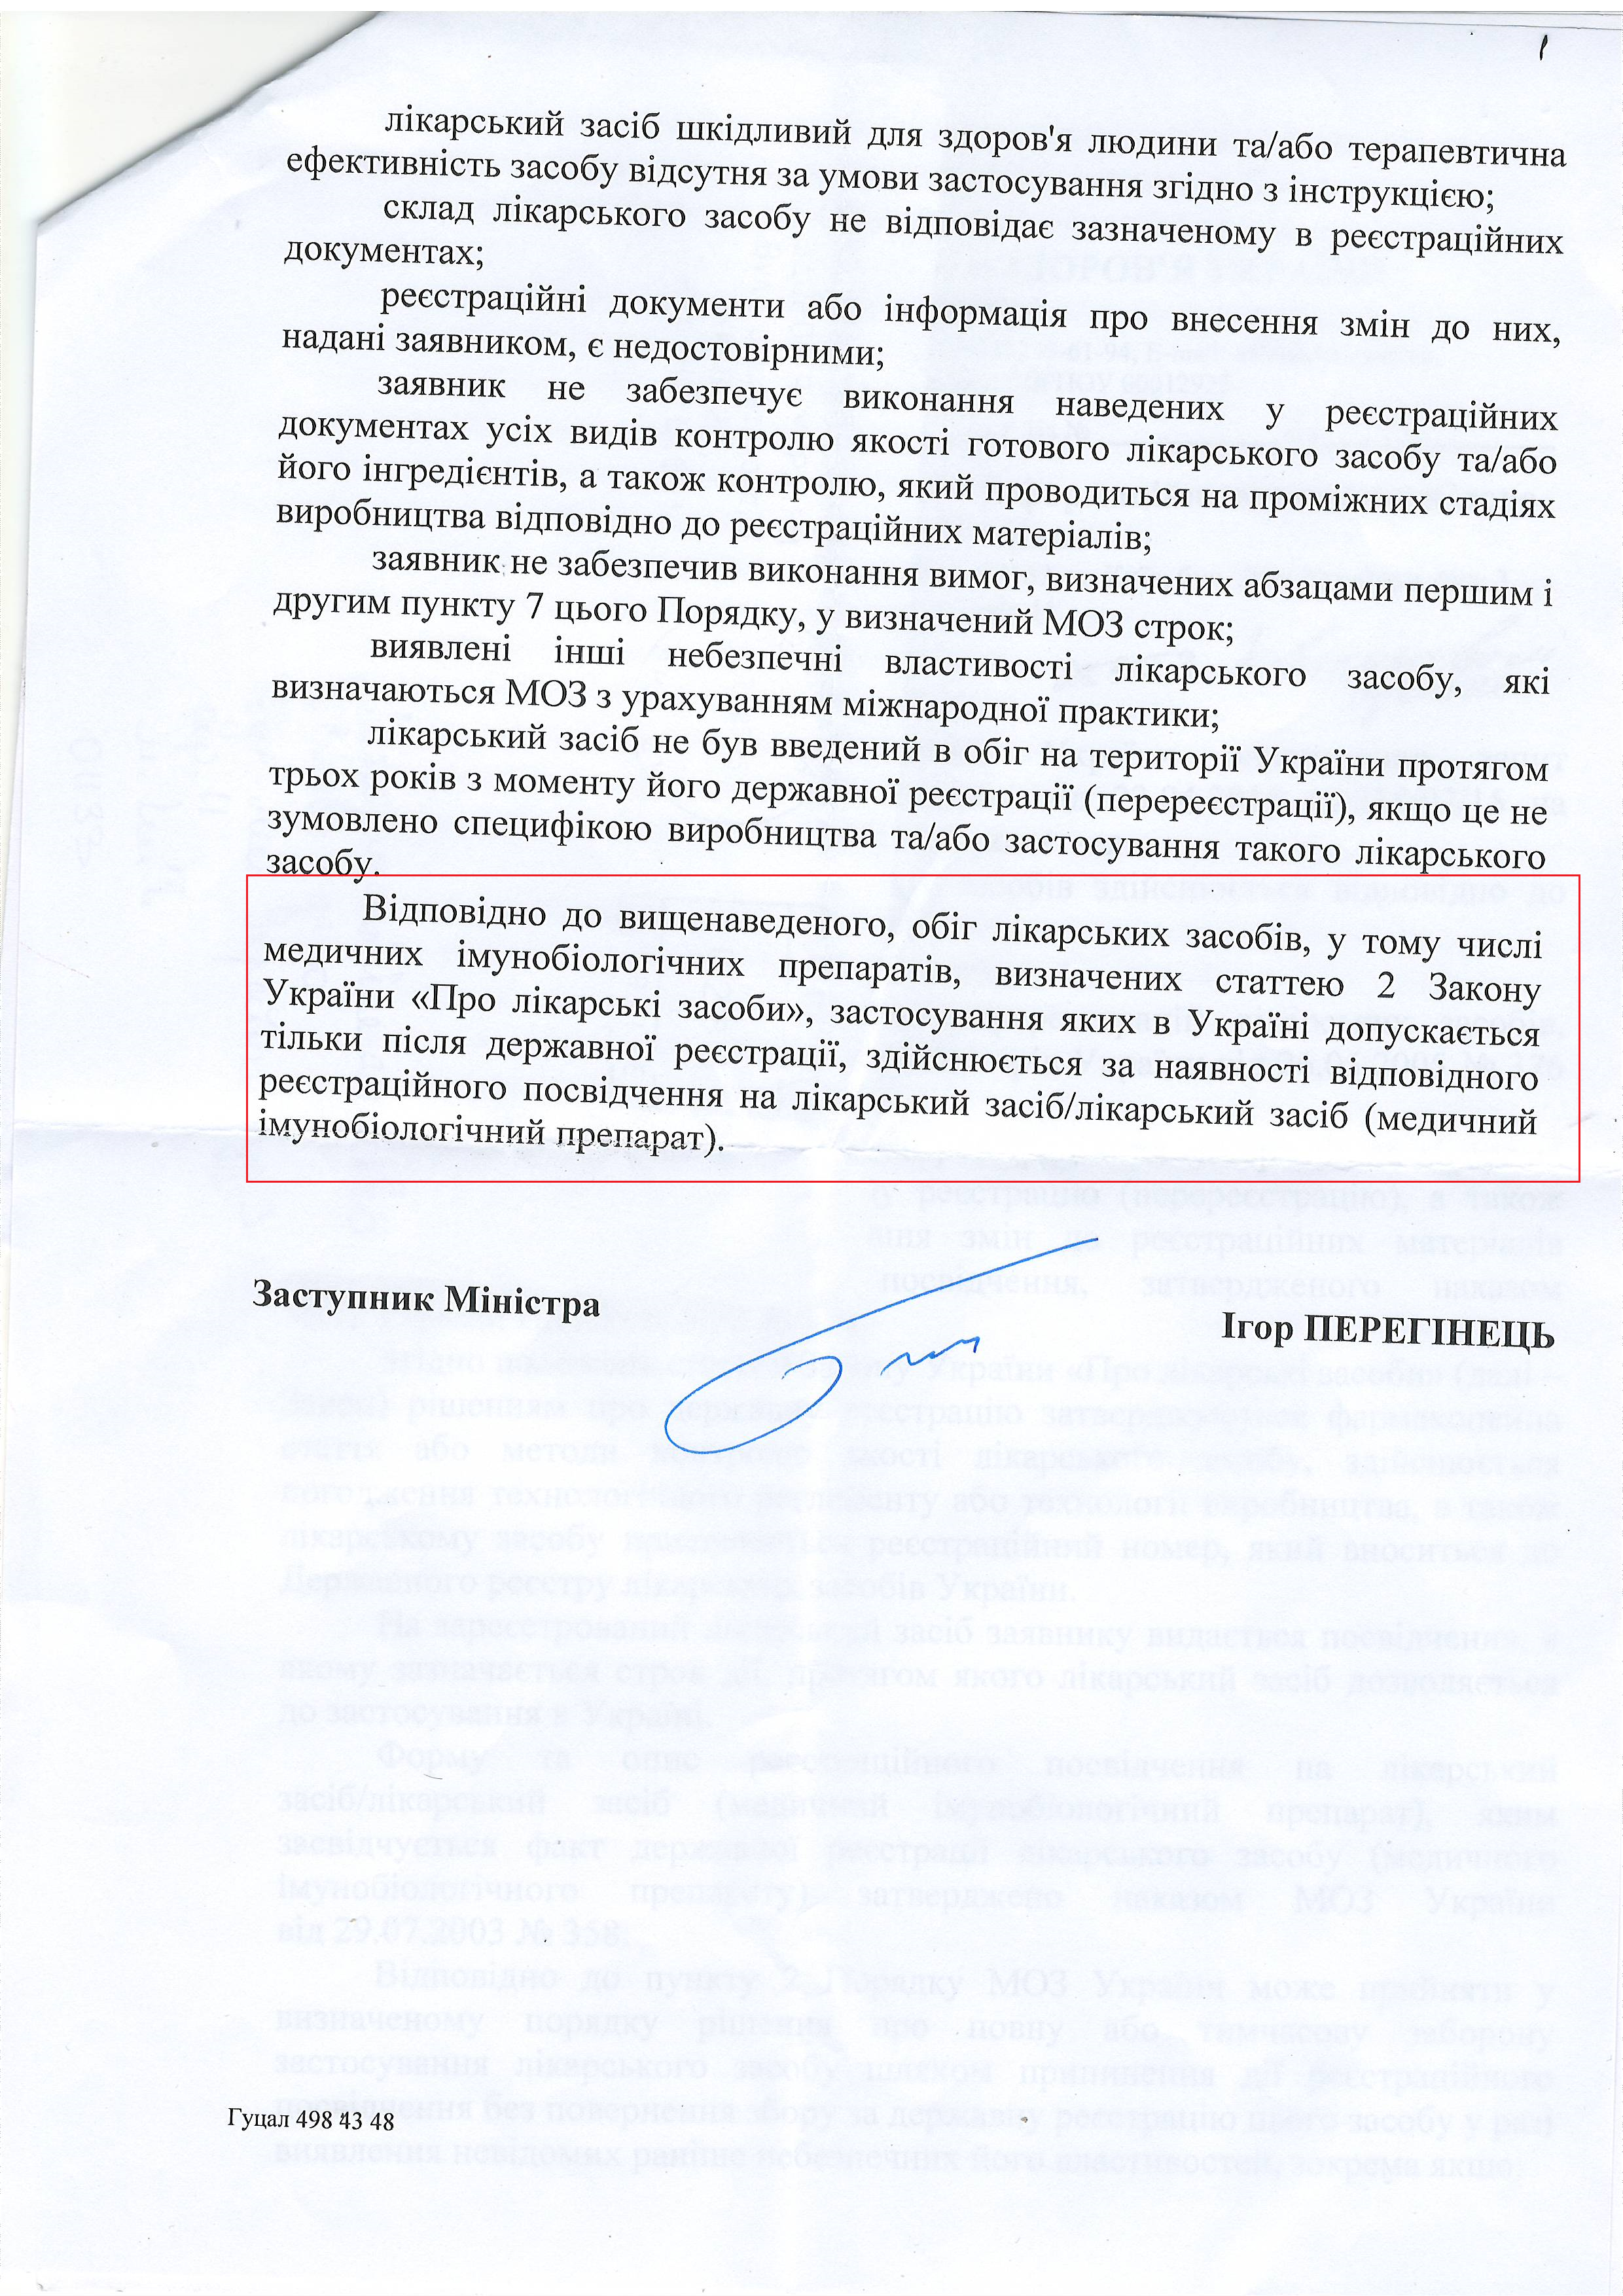 лист міністерства охорони здоров'я України  від 6 травня 2015 року